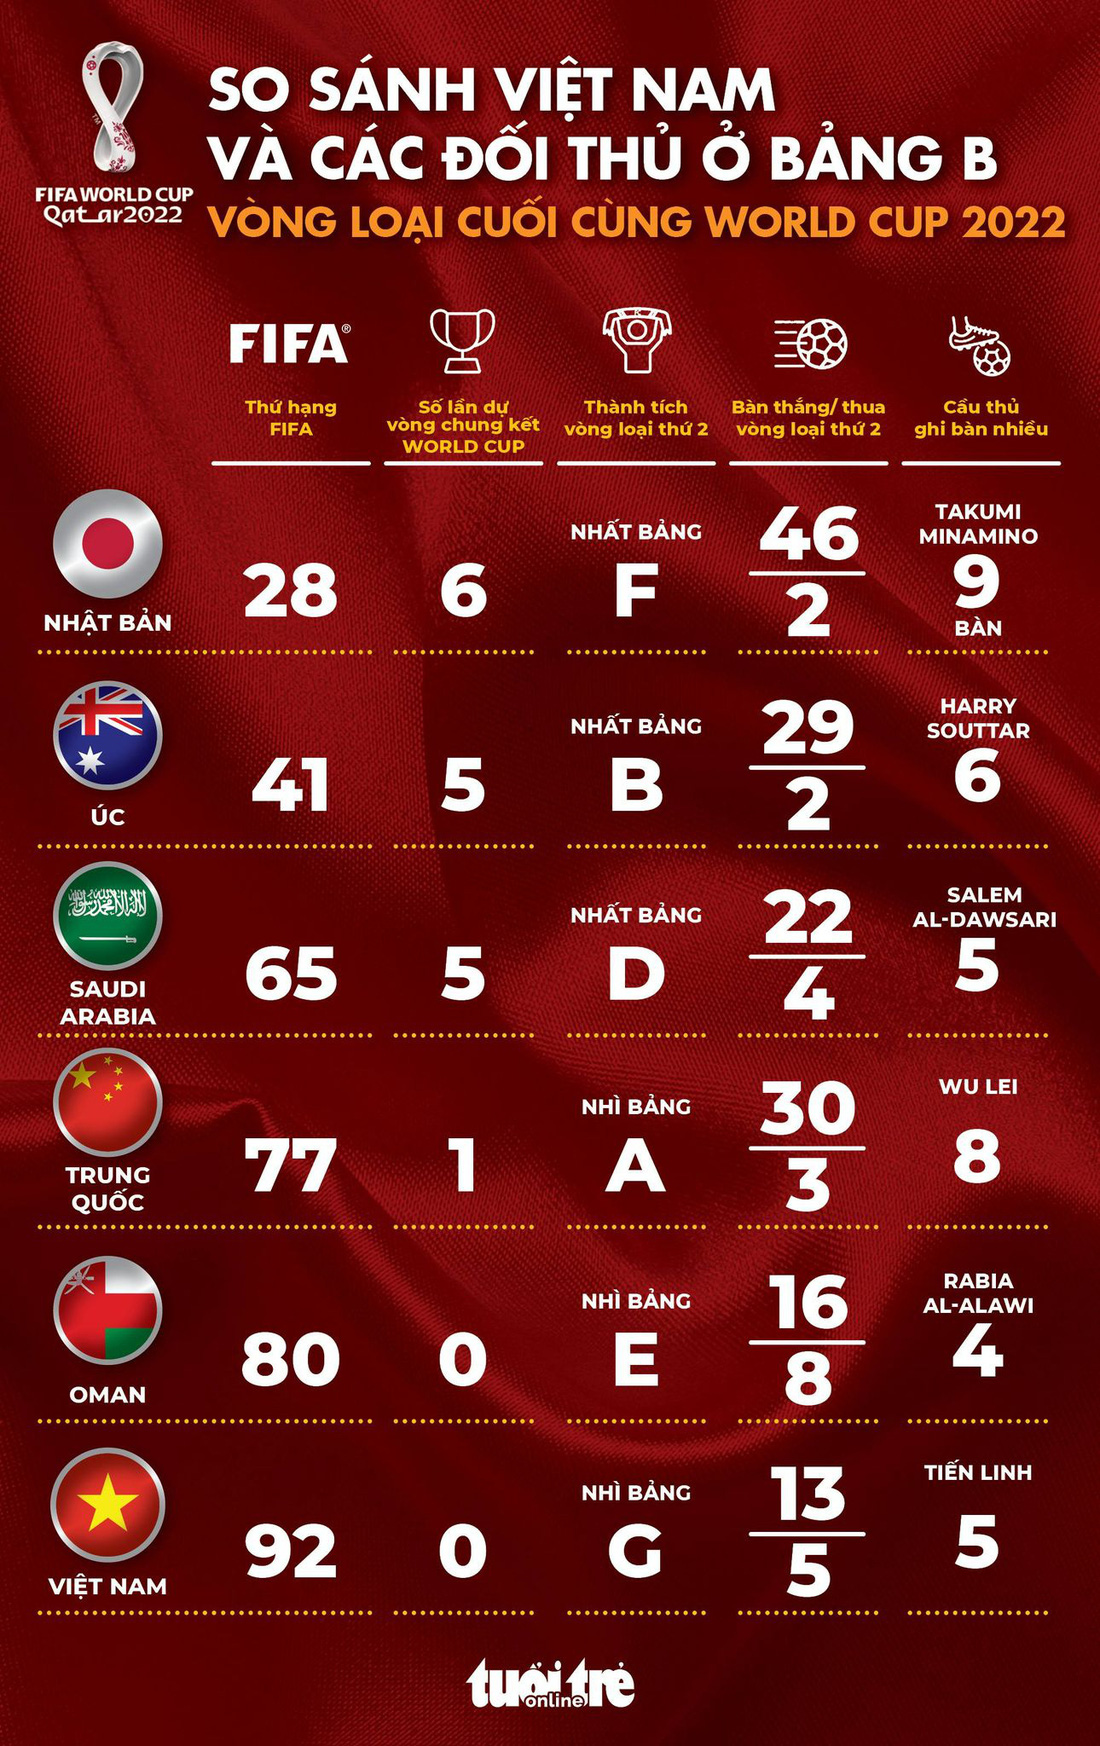 Sức mạnh các đối thủ của tuyển Việt Nam ở vòng loại cuối cùng World Cup 2022 - Ảnh 1.